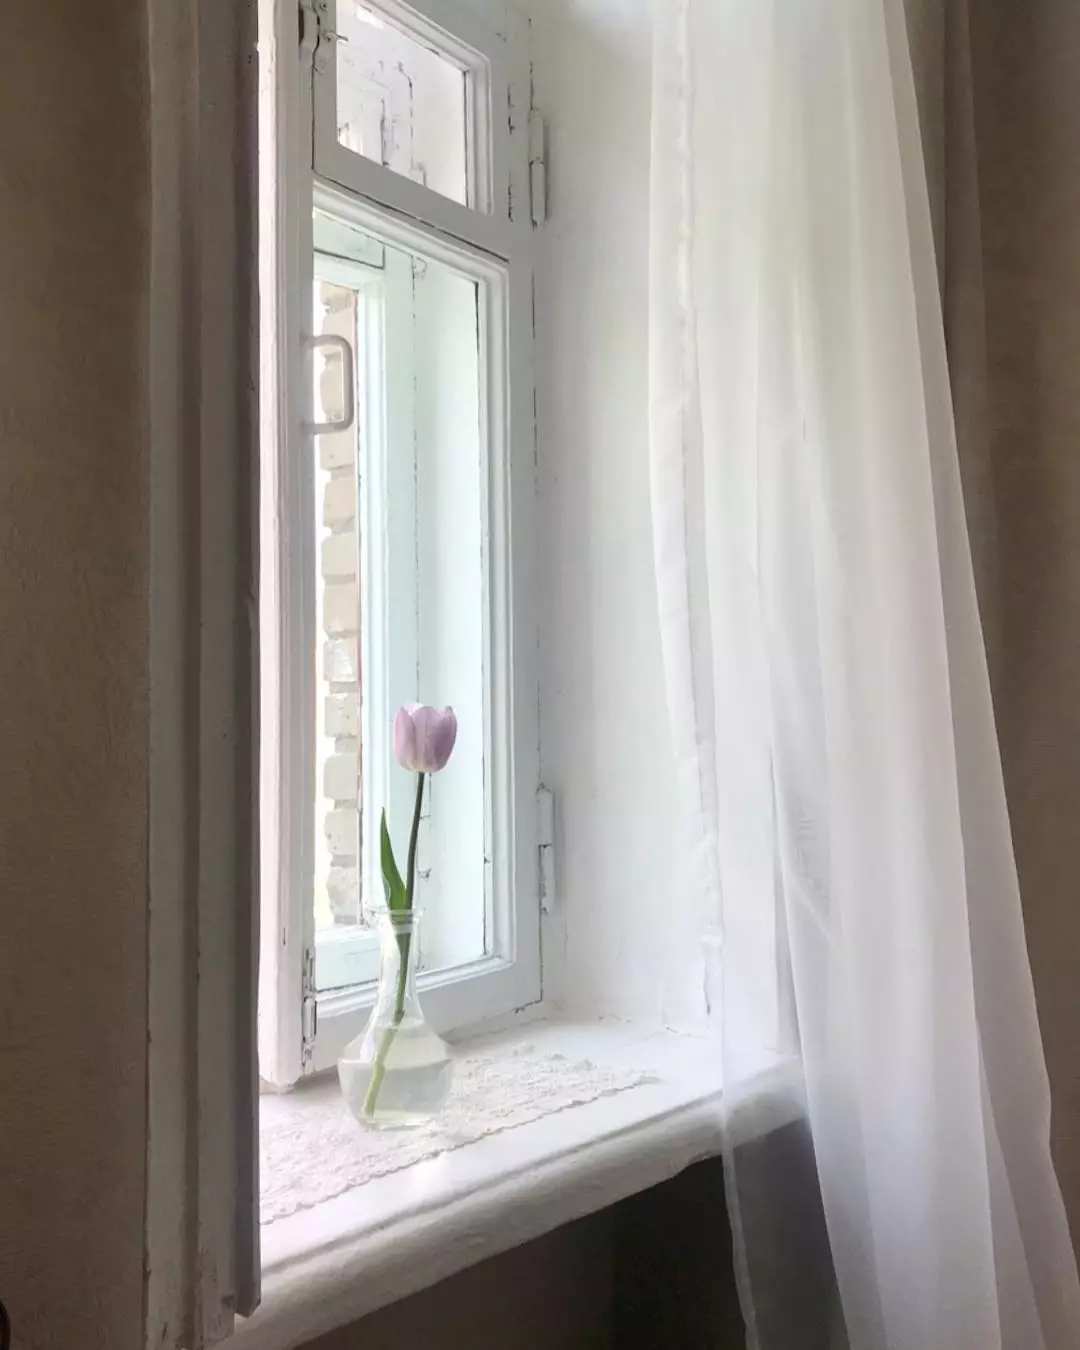 Régi ablakok és ablakpárkányok